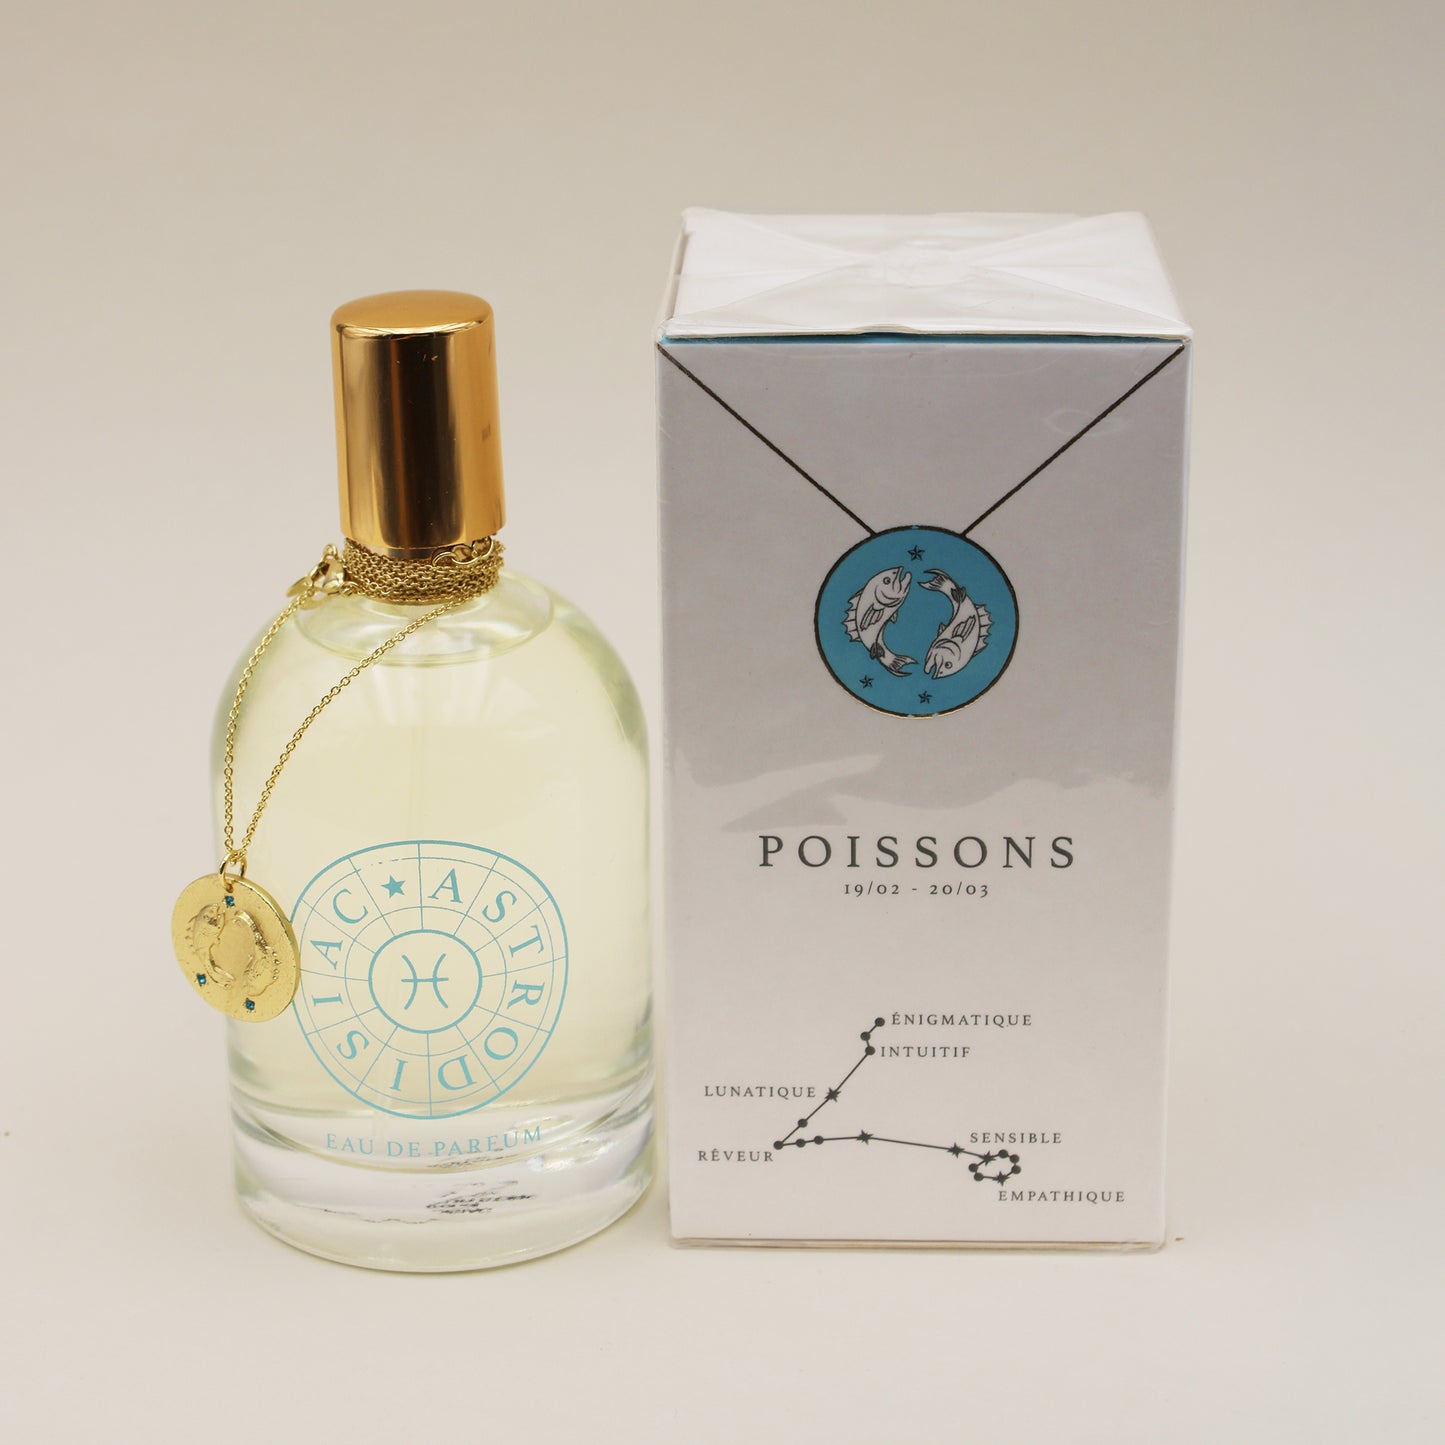 Le Coffret: Parfum et Collier Poissons